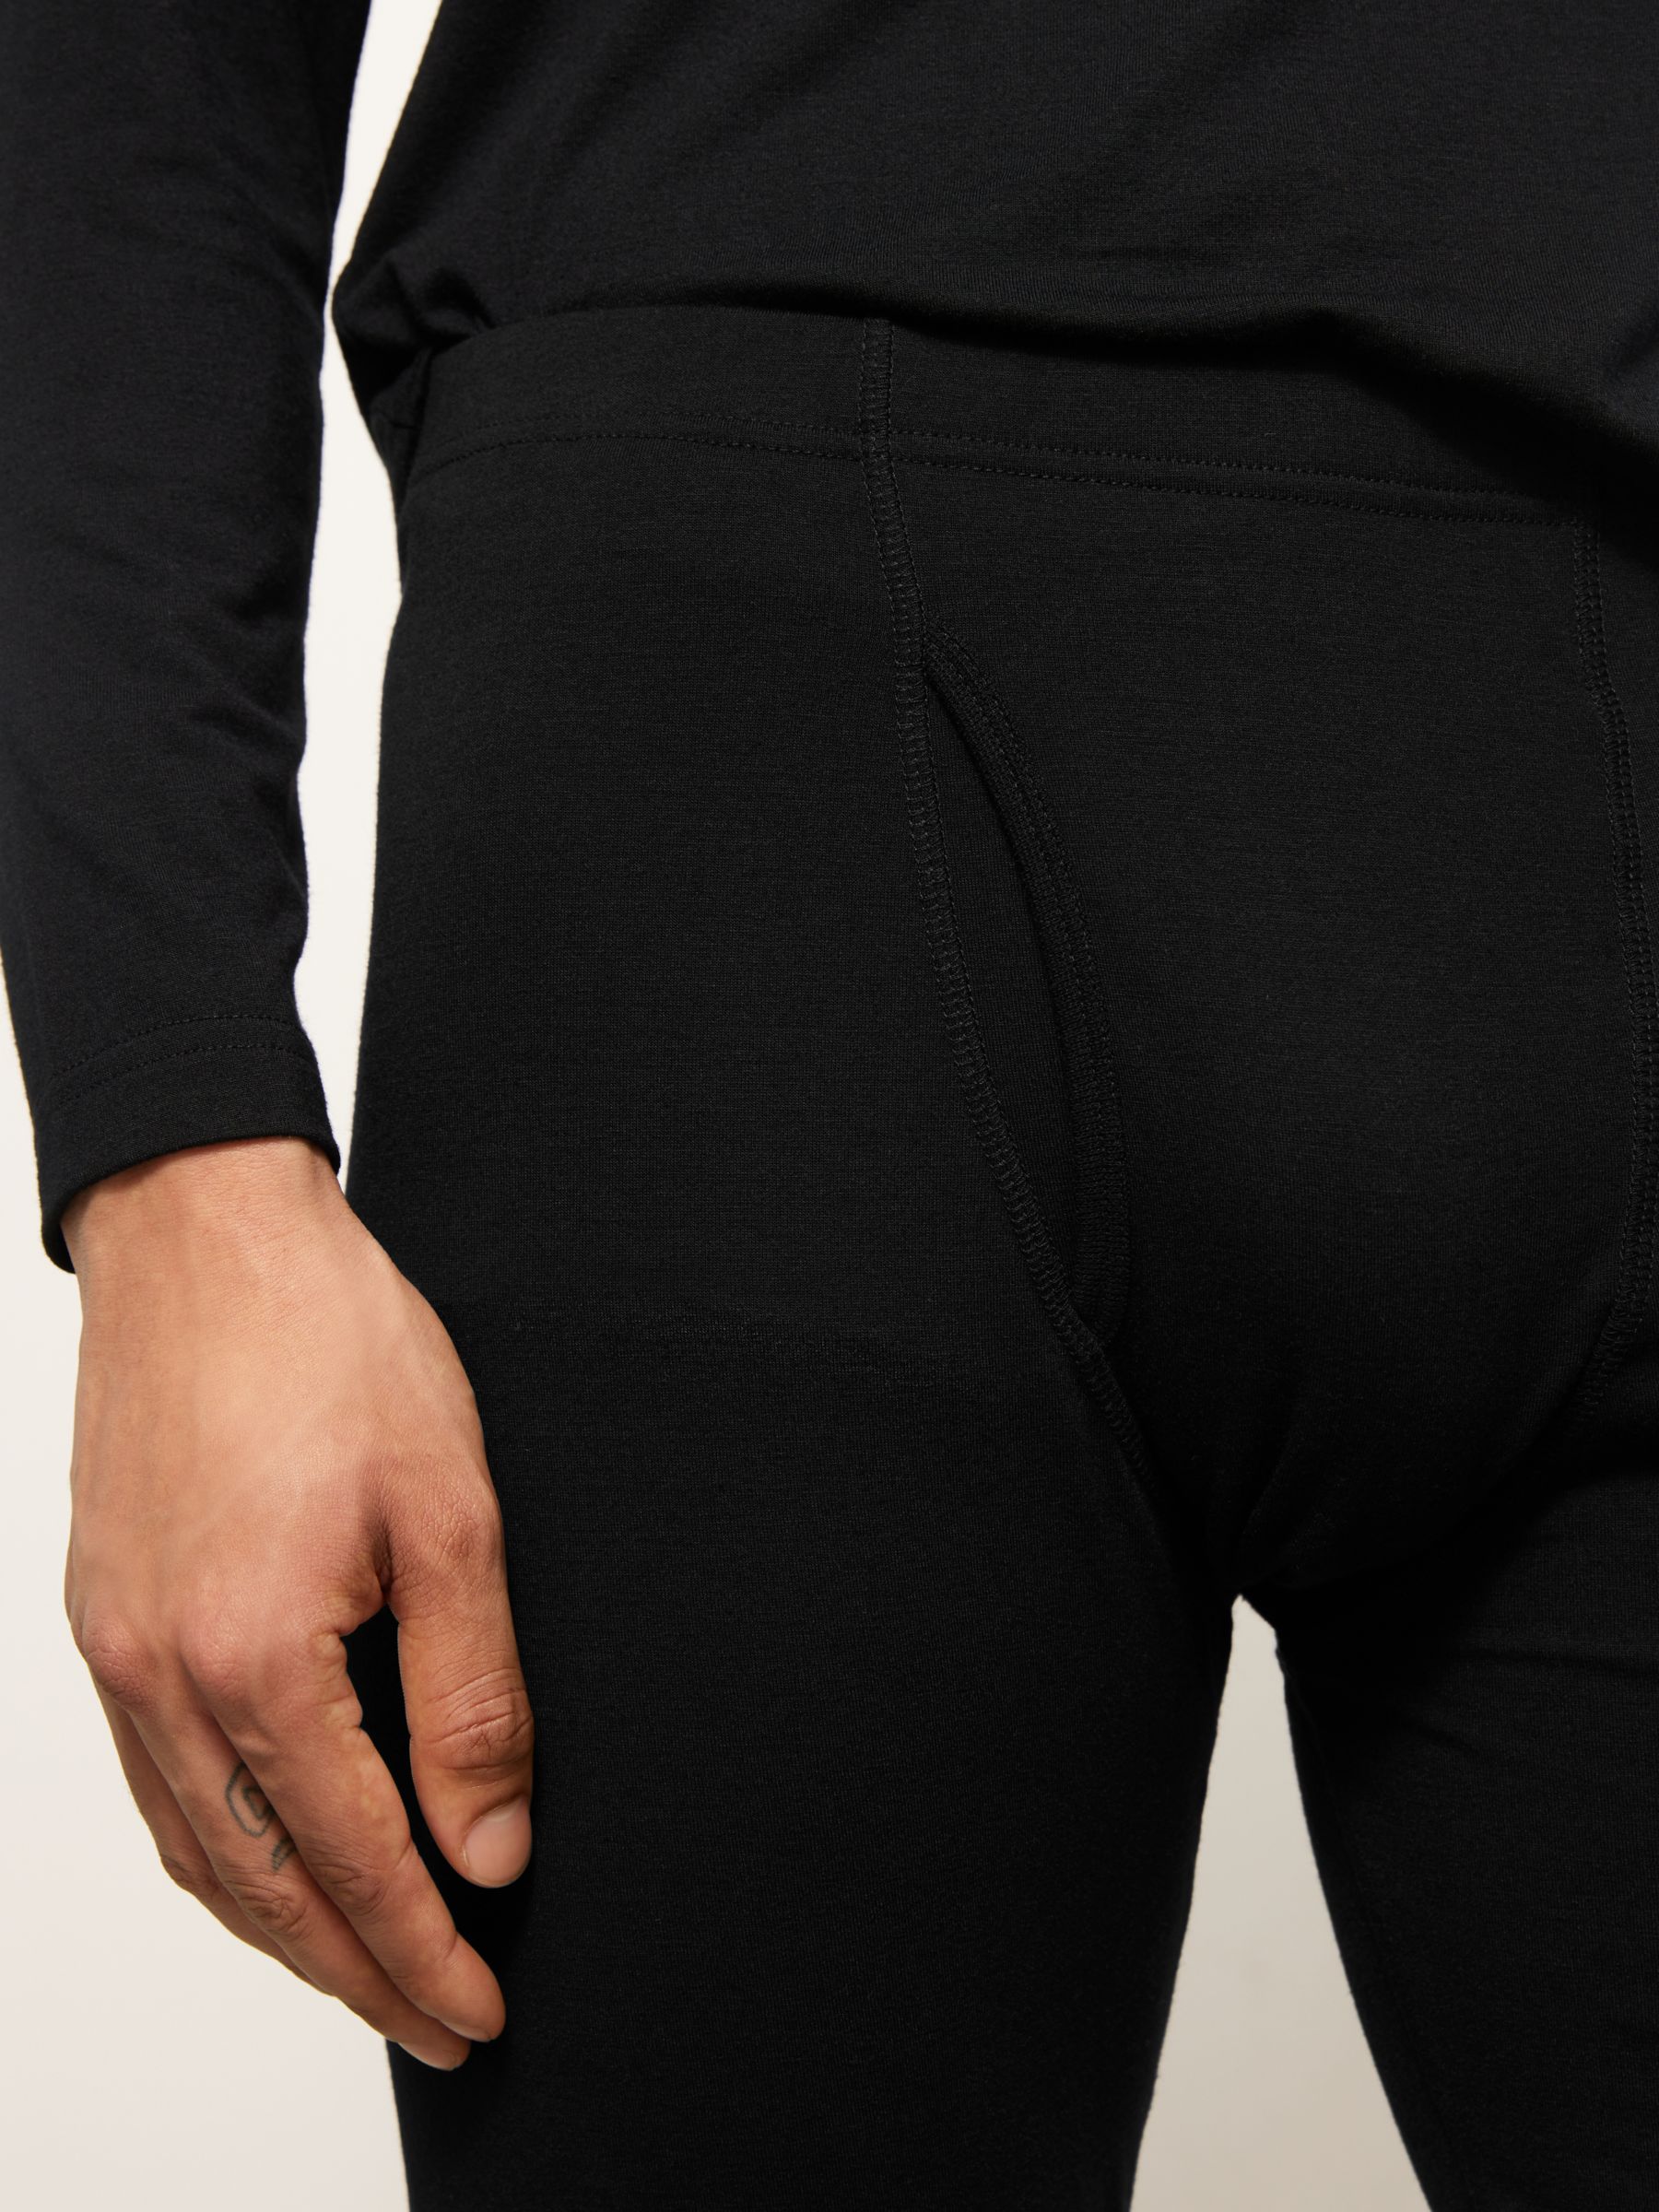 Men's Double-Layer Underwear, Pants at L.L. Bean